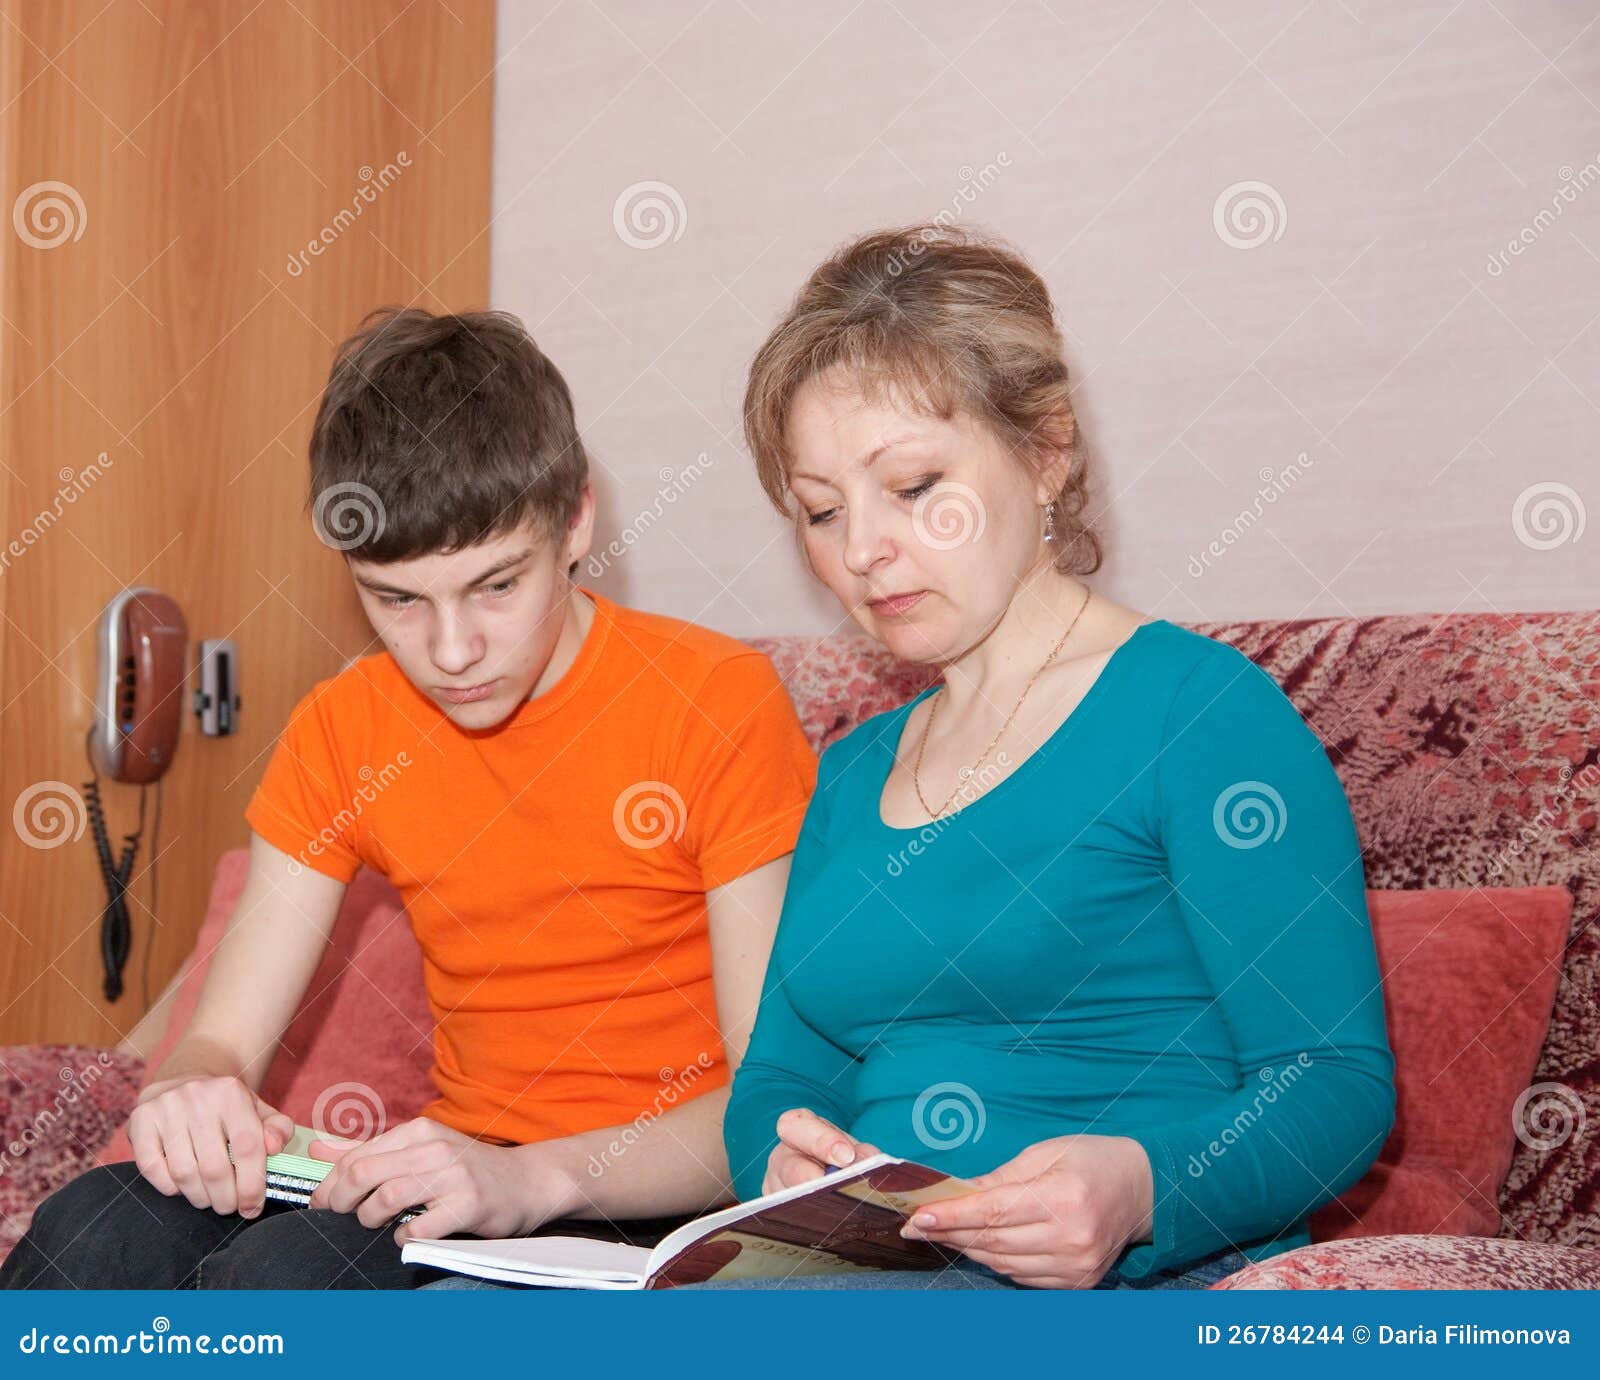 Русская мама и ее сынок. Мать проводит сына. Мать и сын учатся. Мама показывает сыну картинку. Мама помогает сыну с уроками.